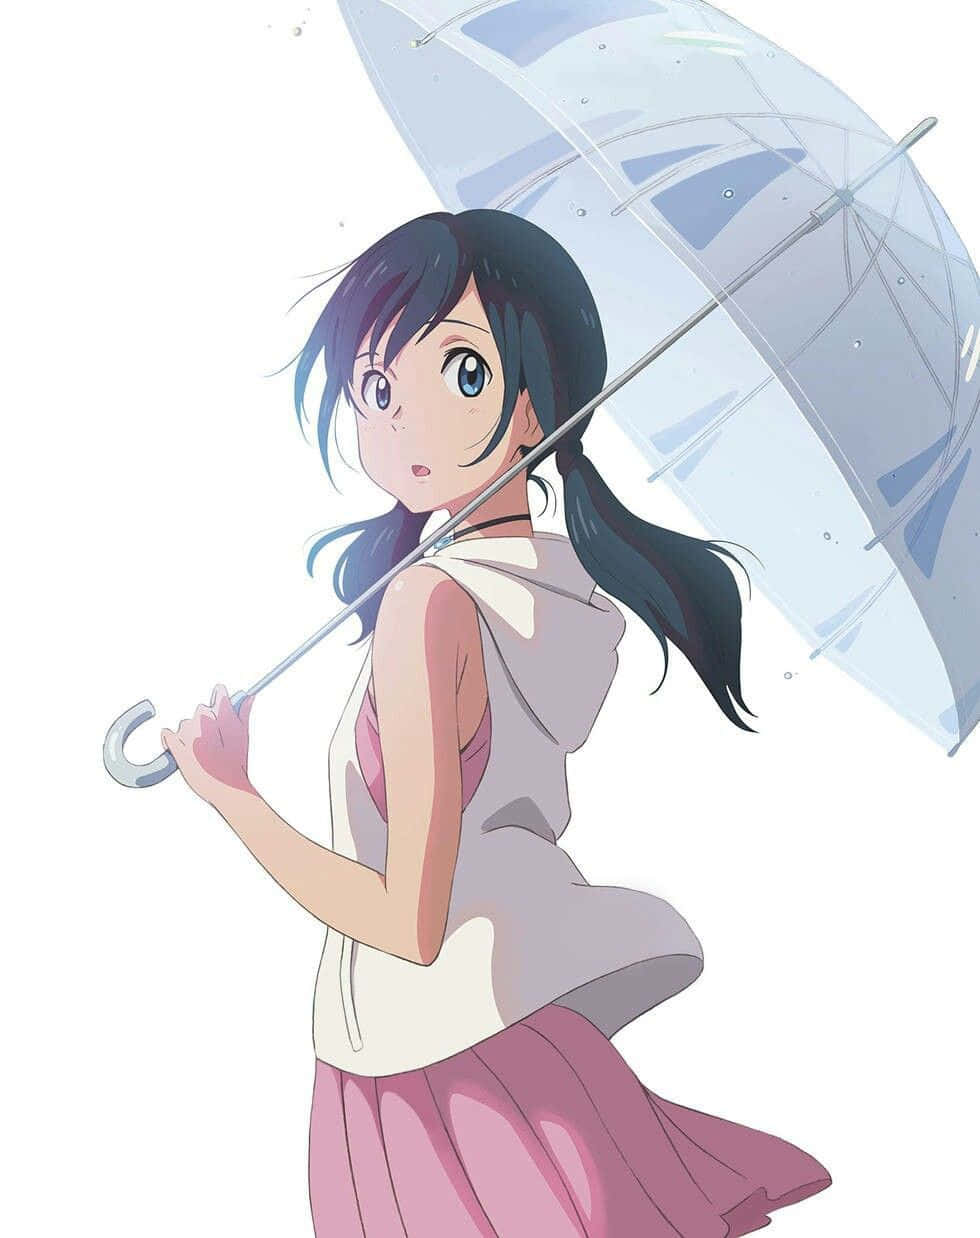 A Girl Holding An Umbrella